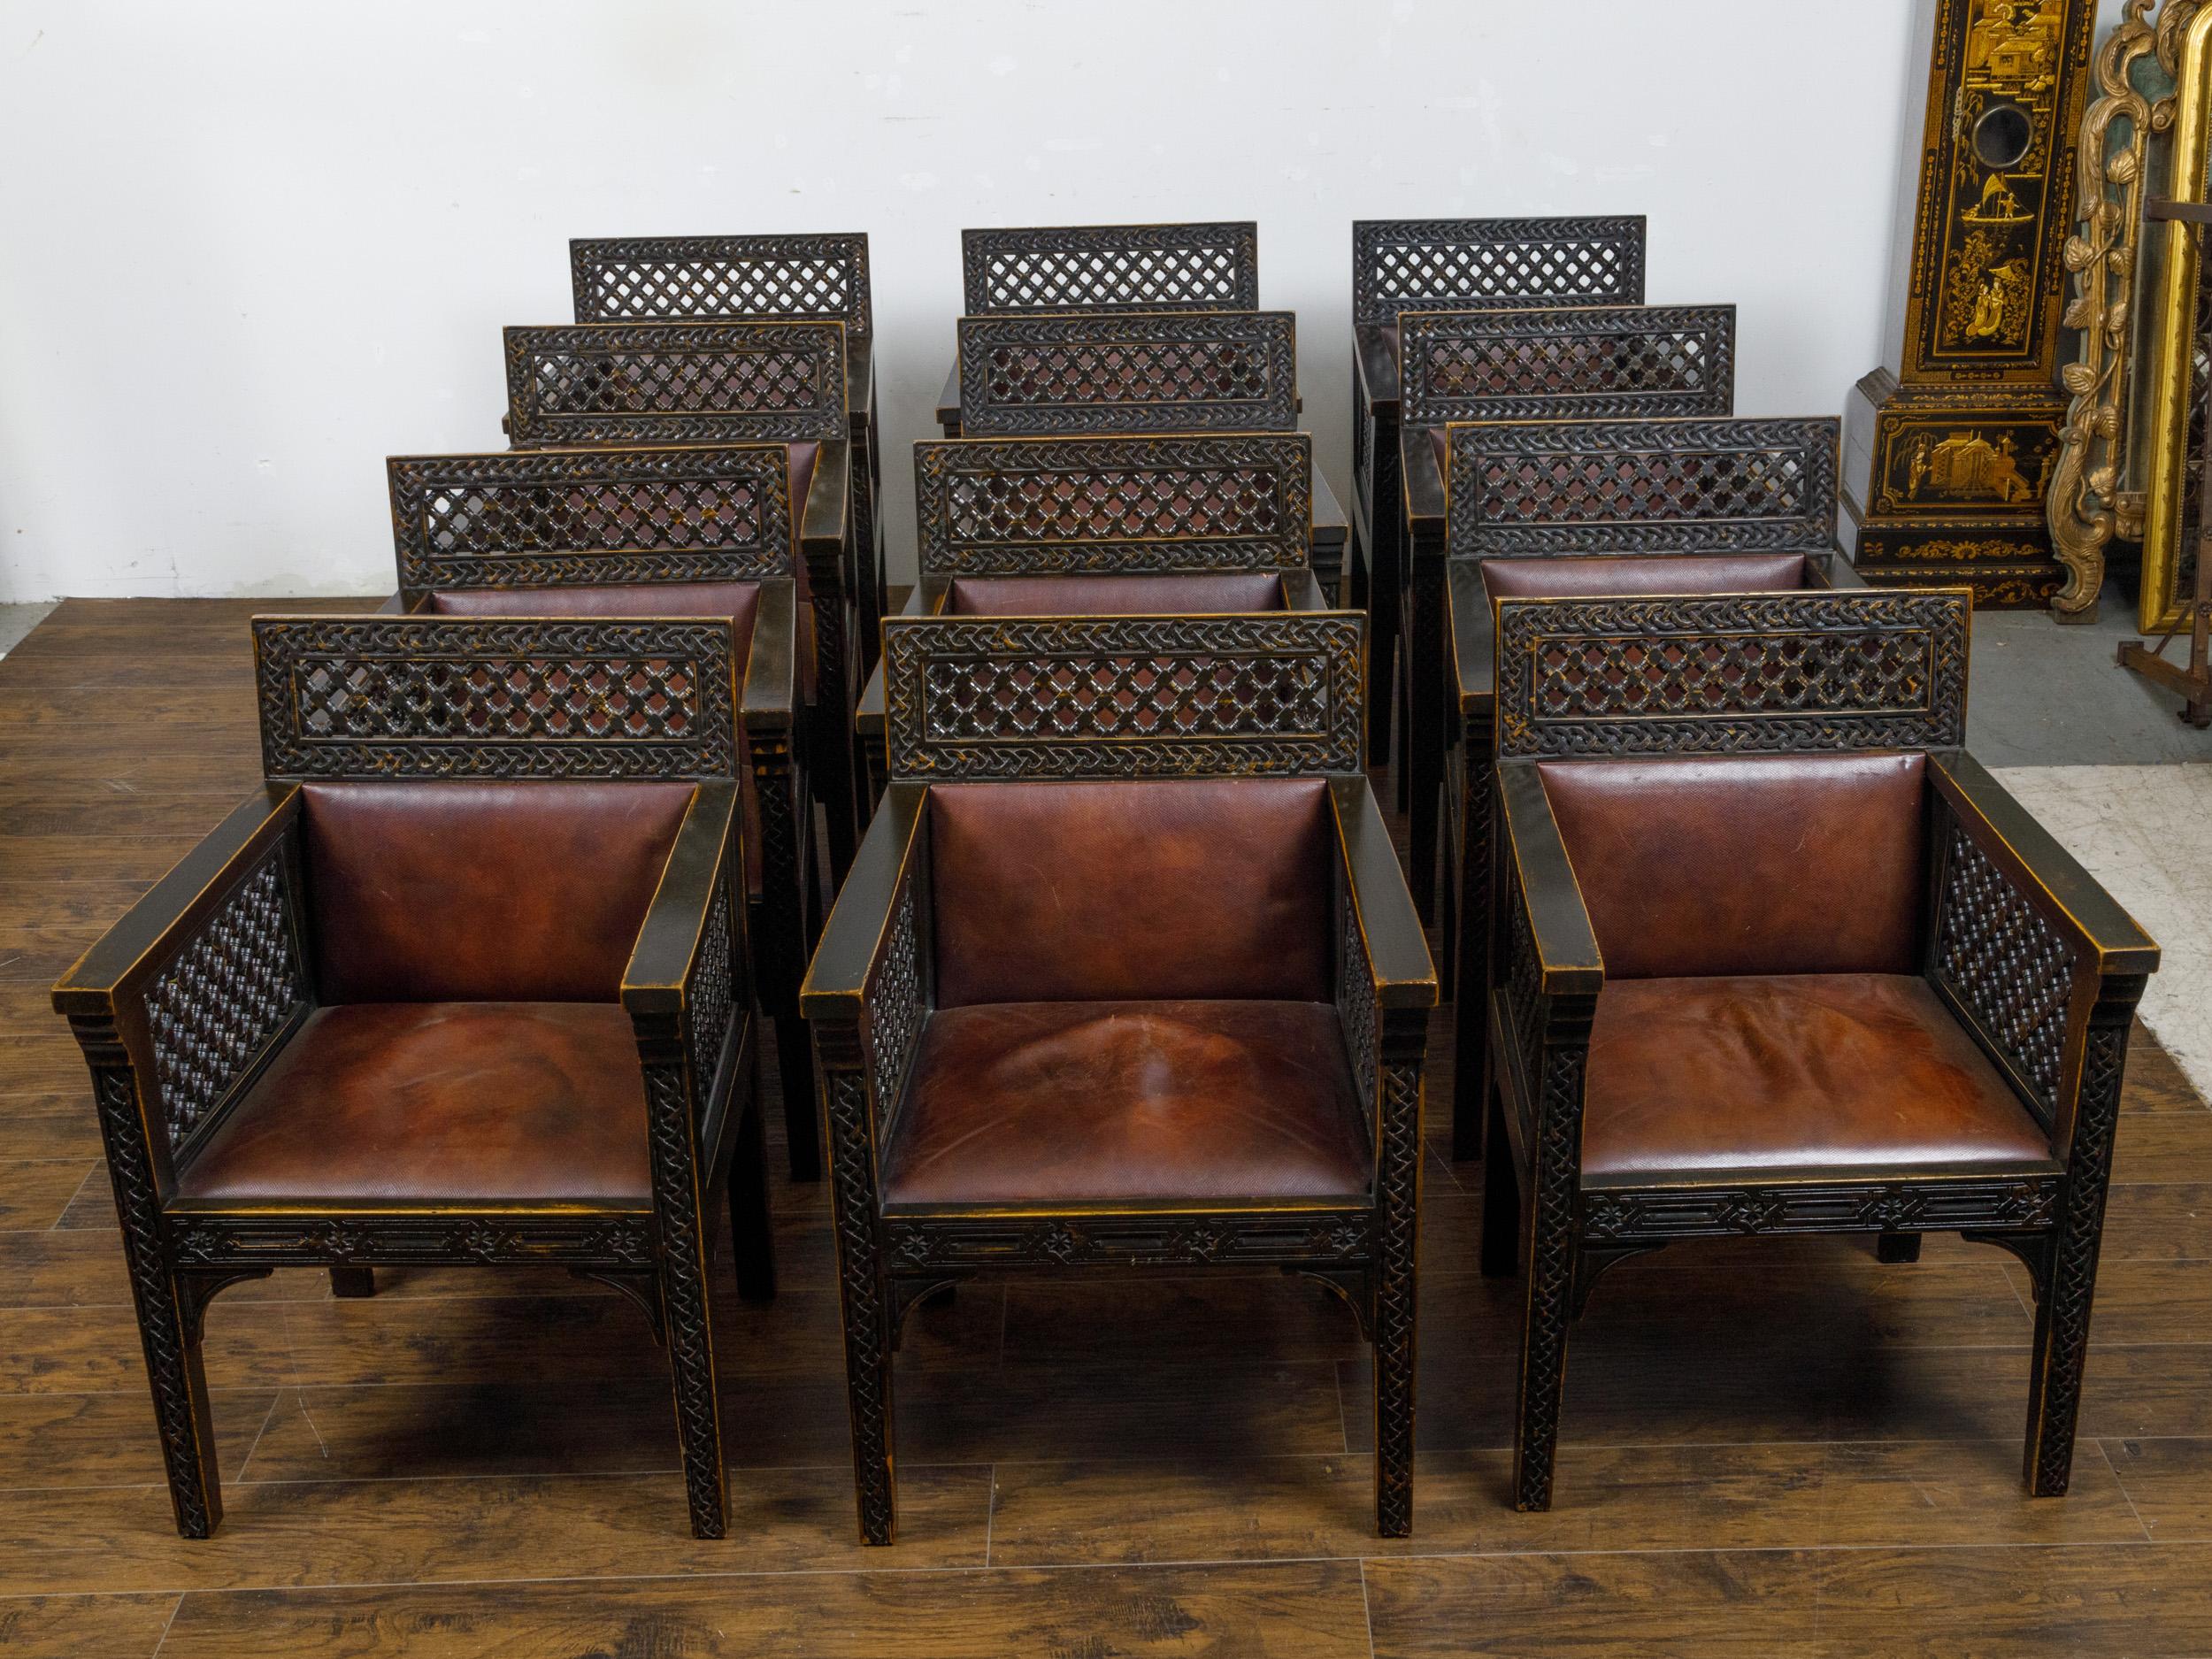 Ein Satz von 12 marokkanischen Sesseln aus ebonisiertem Holz um 1900 mit geschnitztem Dekor und ledernen Sitzen und Rückenlehnen. Dieses Set aus zwölf marokkanischen Sesseln aus ebonisiertem Holz aus der Zeit um 1900 wurde mit viel Liebe zum Detail